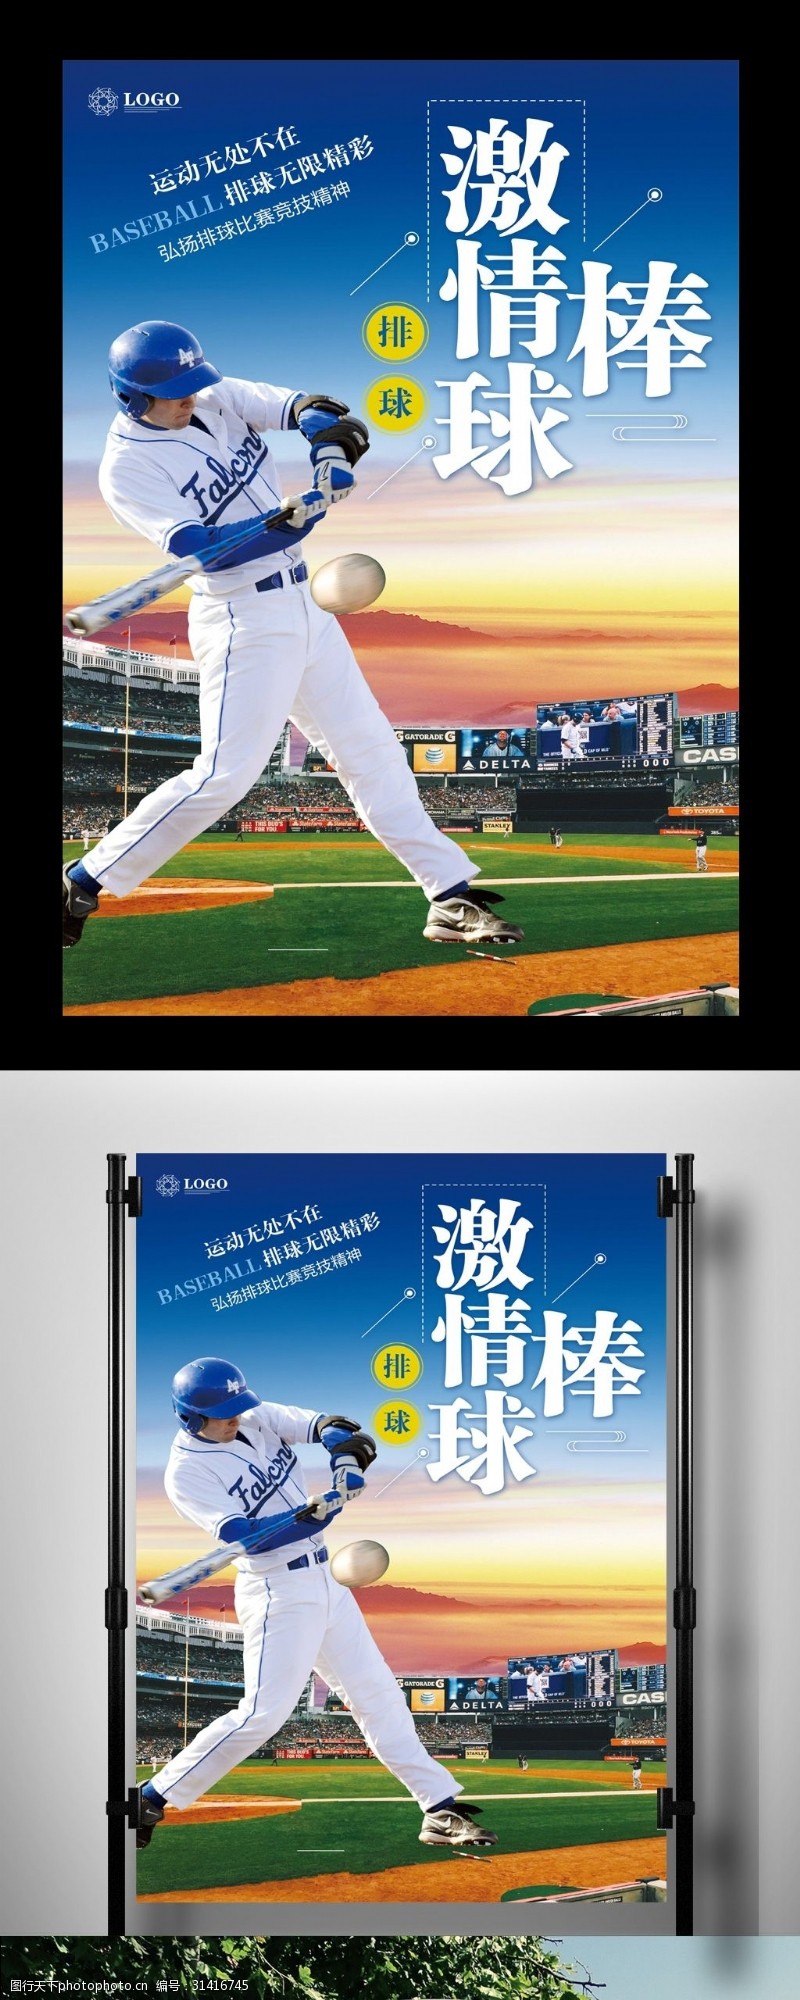 棒球运动员激情棒球体育运动海报